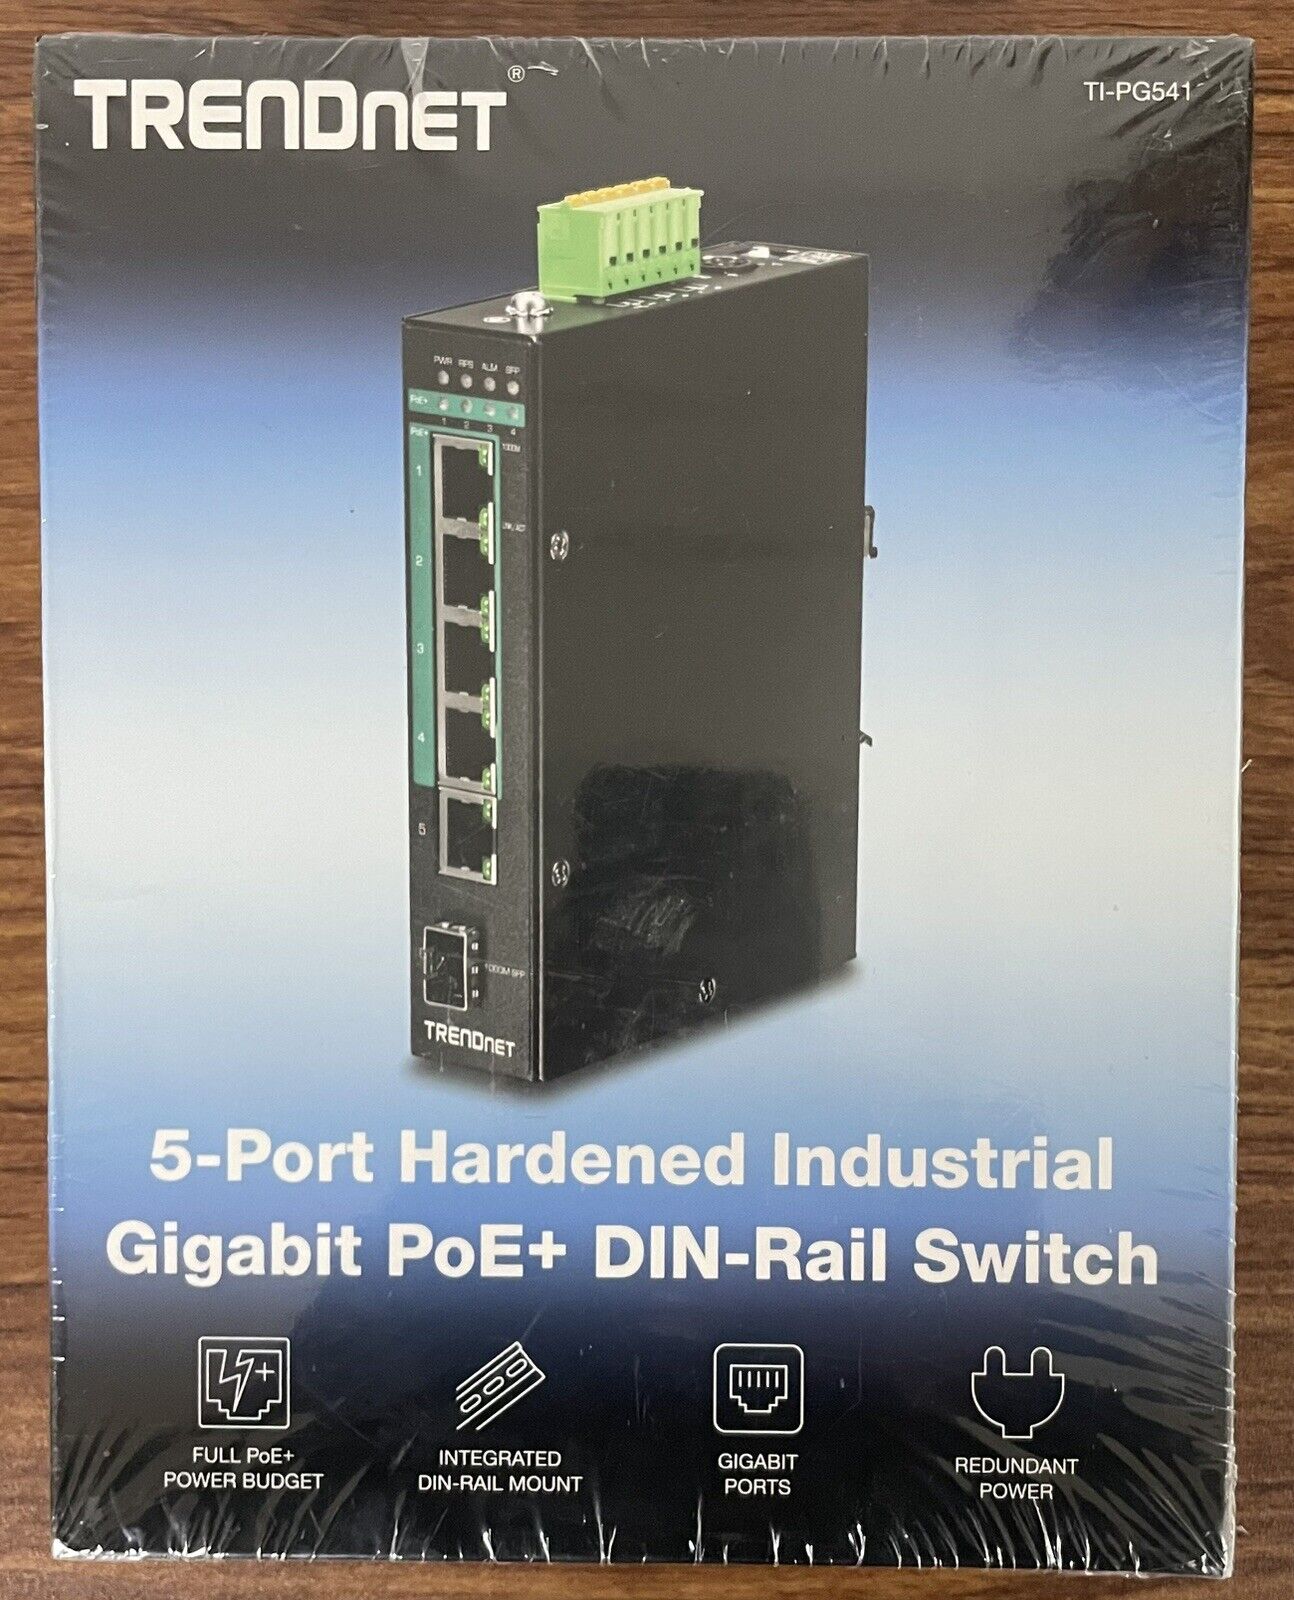 TRENDnet TI-PG541 5-port Hardened Industrial Gigabit PoE+ DIN-Rail Switch (NEW)